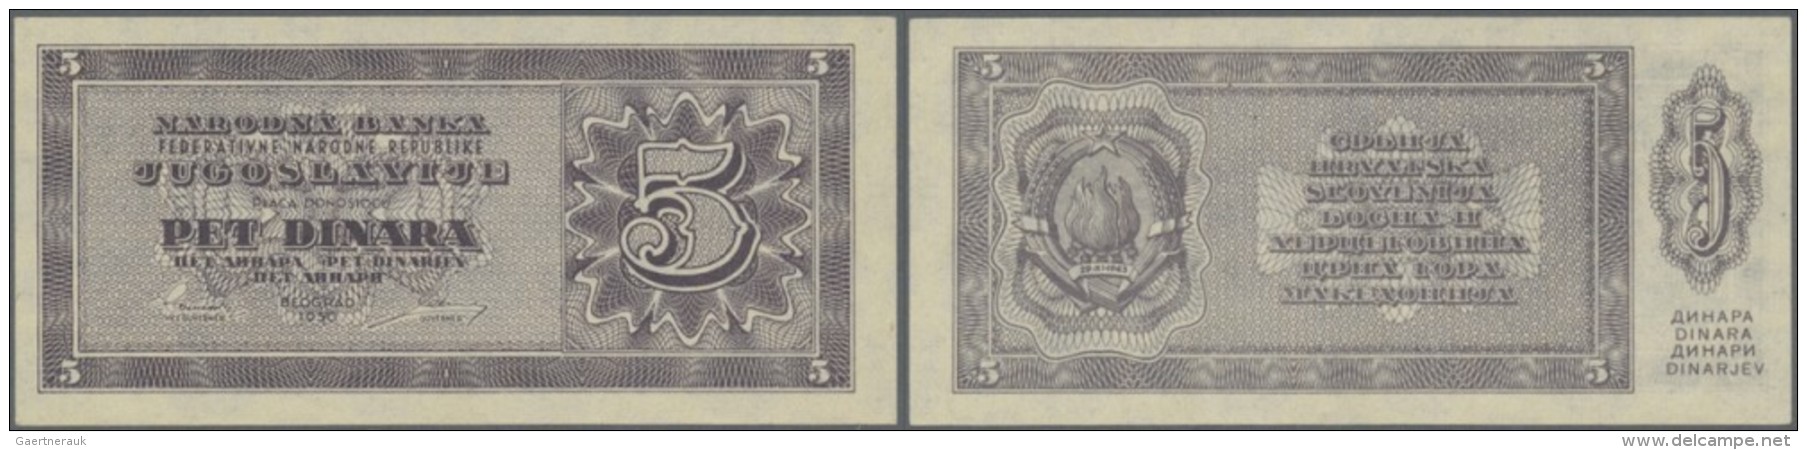 Yugoslavia / Jugoslavien: 5 Dinara 1950, P.67r (not Issued), Tiny Spot At Upper Right, Condition: AUNC. - Jugoslawien